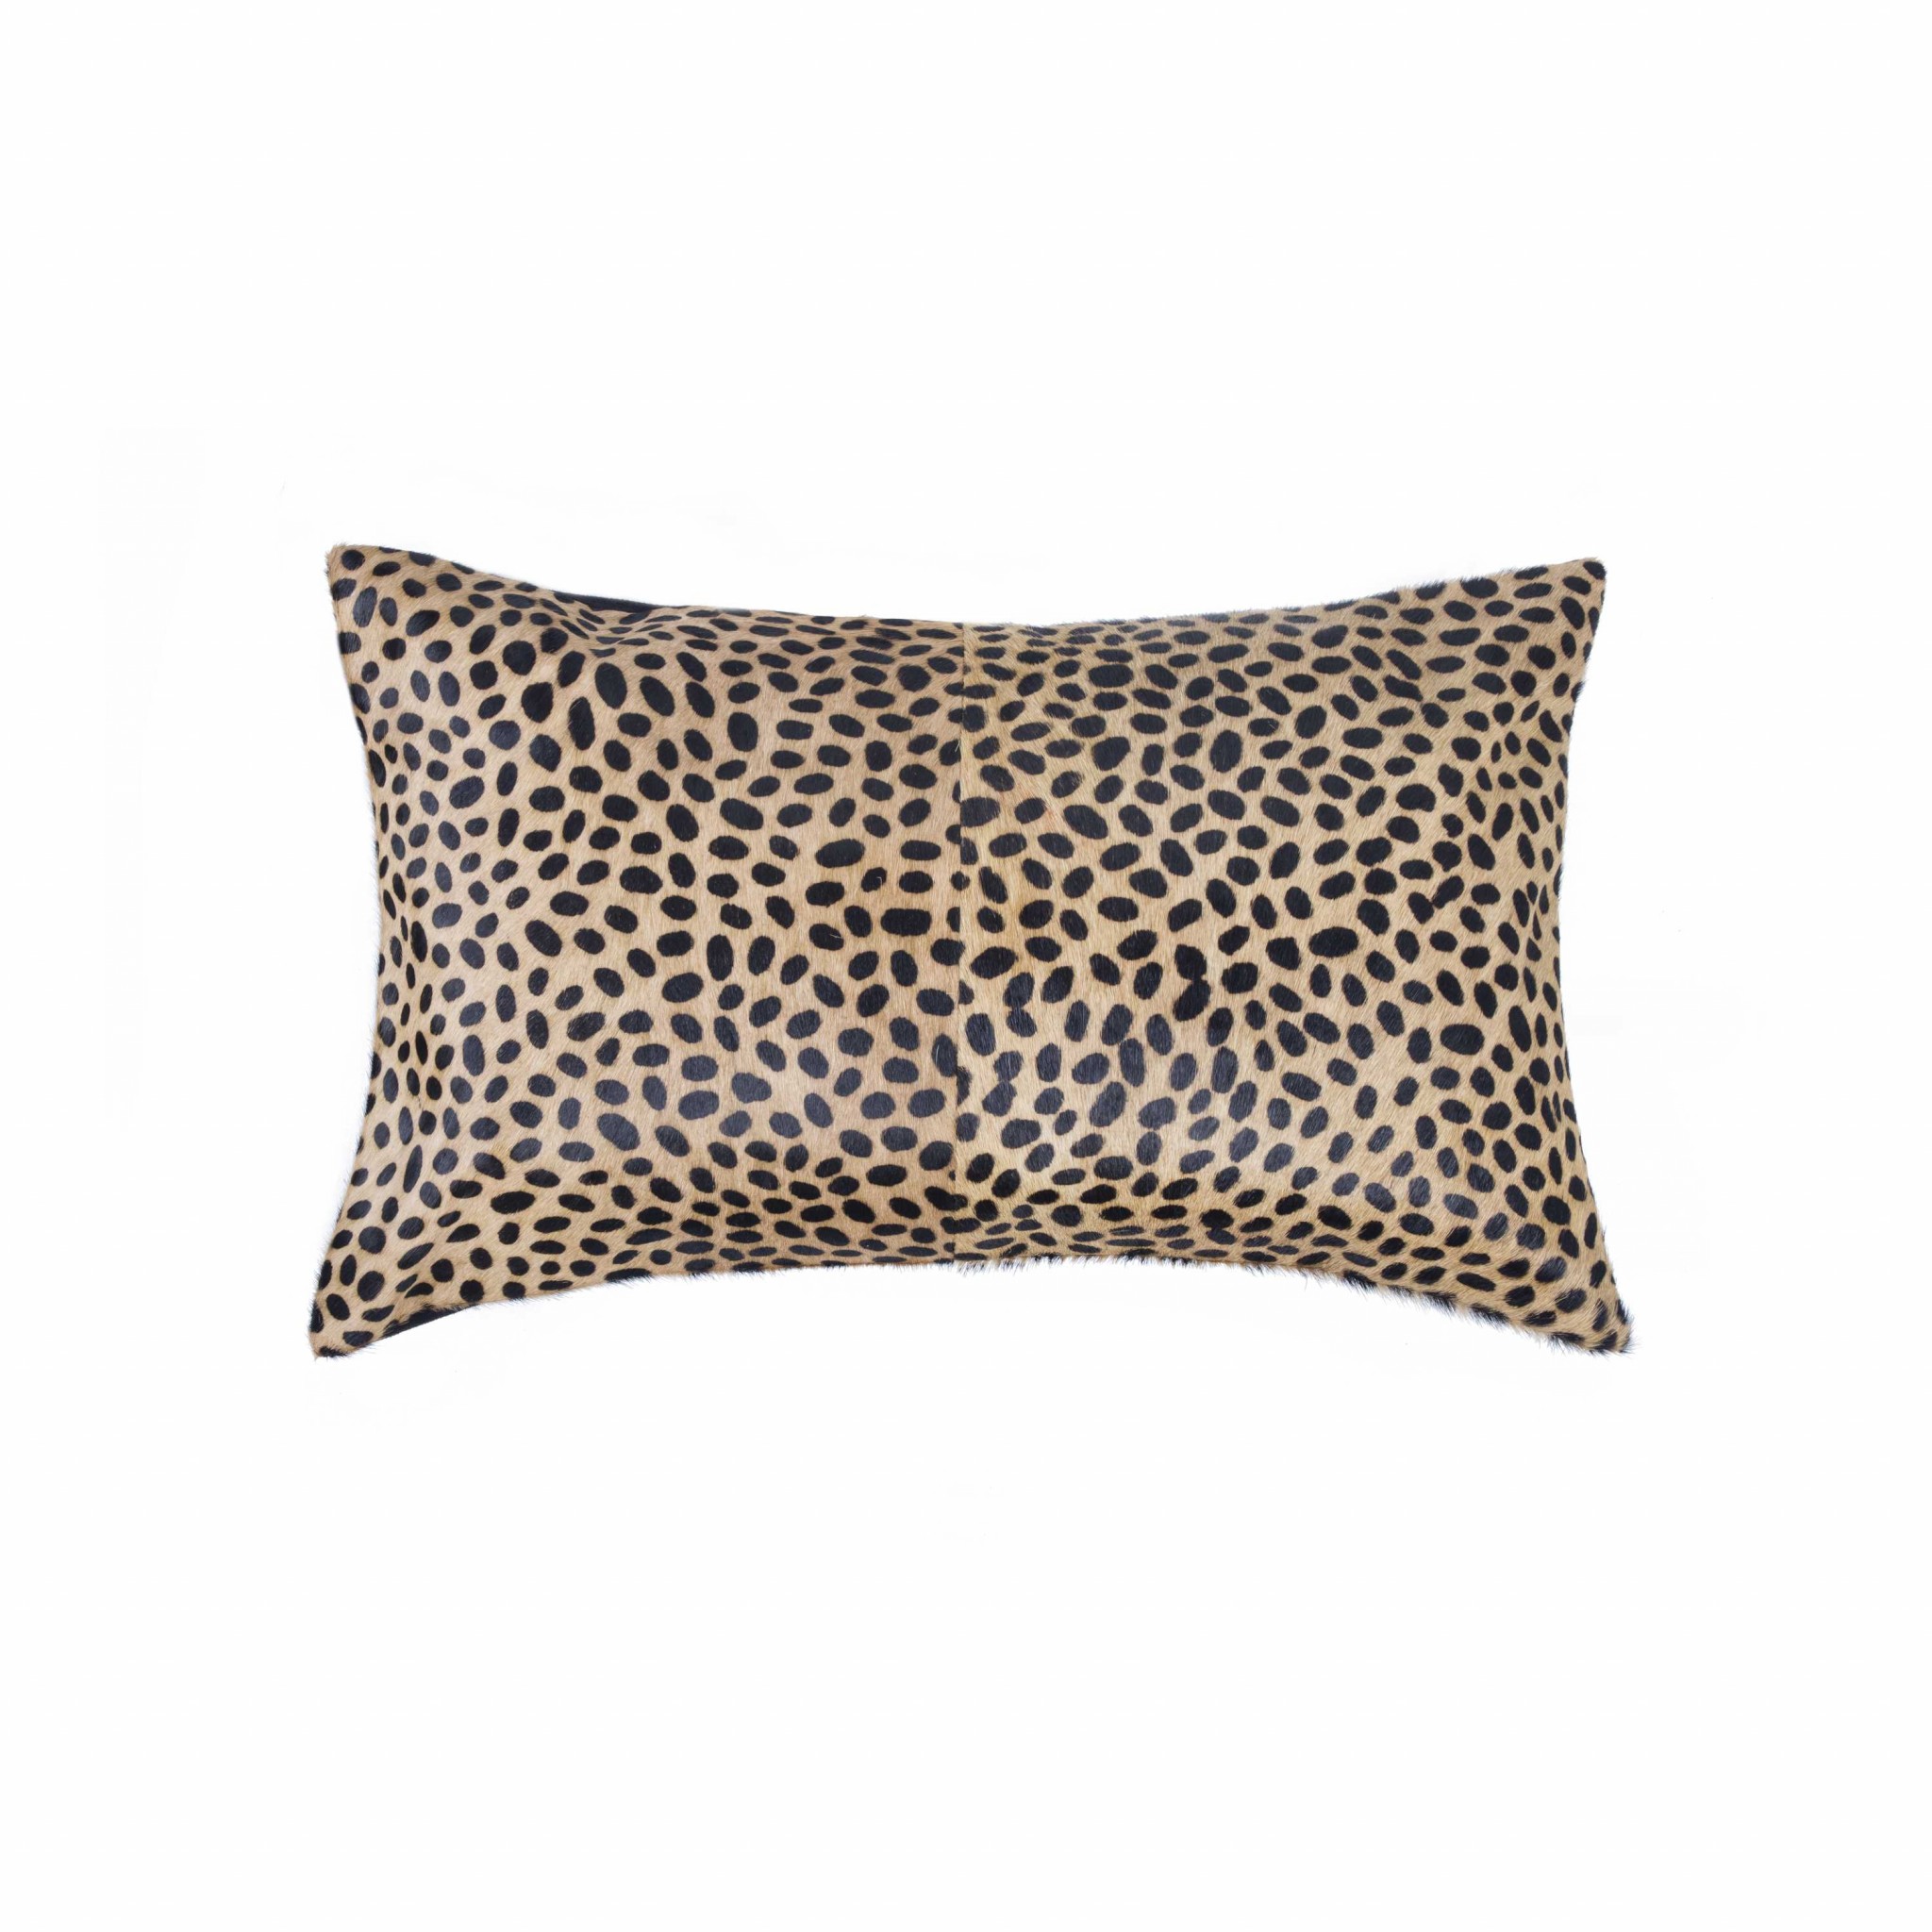 12" x 20" x 5" Cheetah Cowhide - Pillow